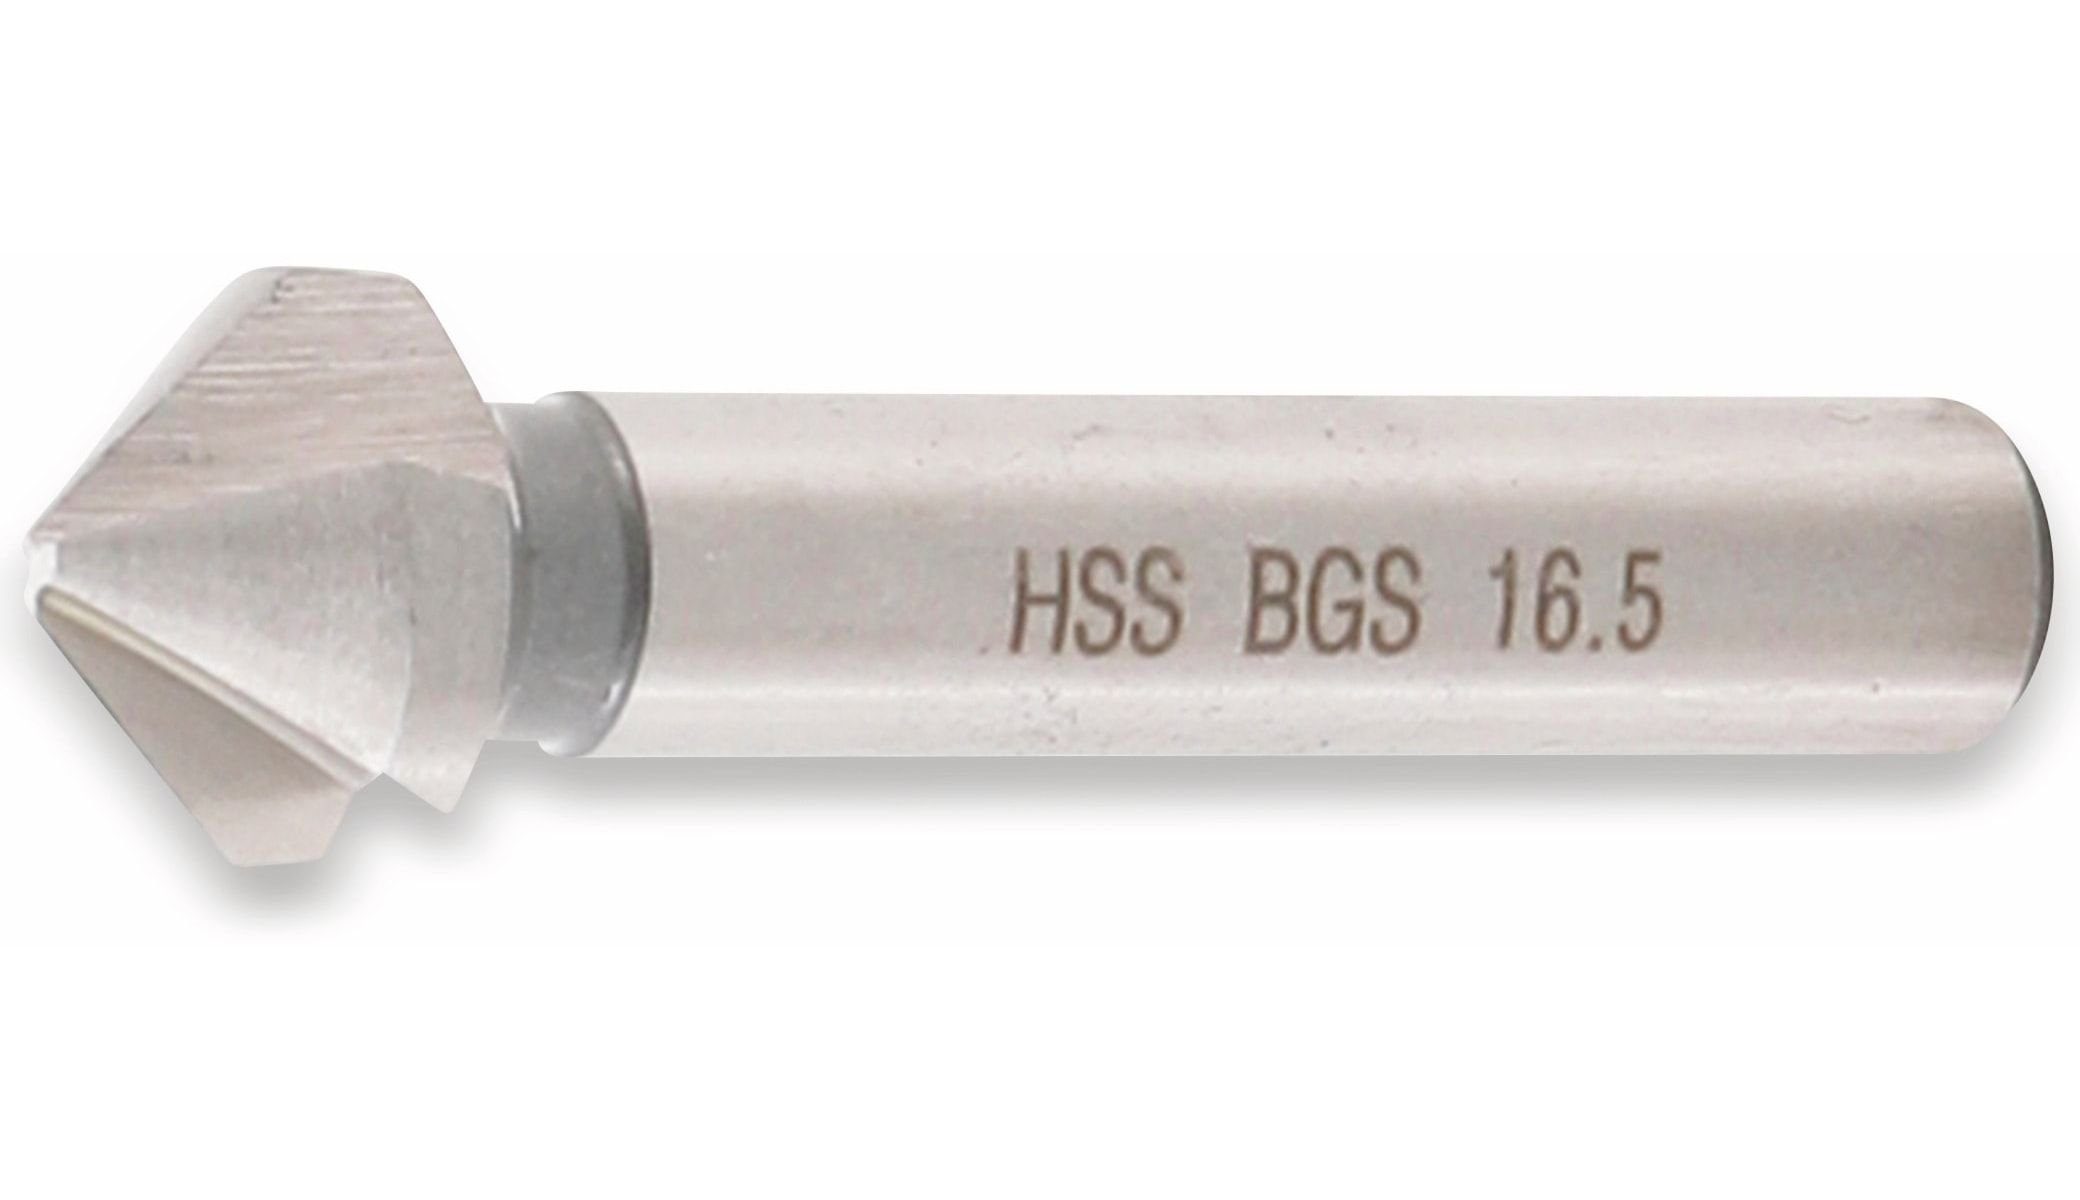 BGS technic Kegelsenker Form BGS 16,5 HSS 335 TECHNIC mm Universalbohrer Ø DIN